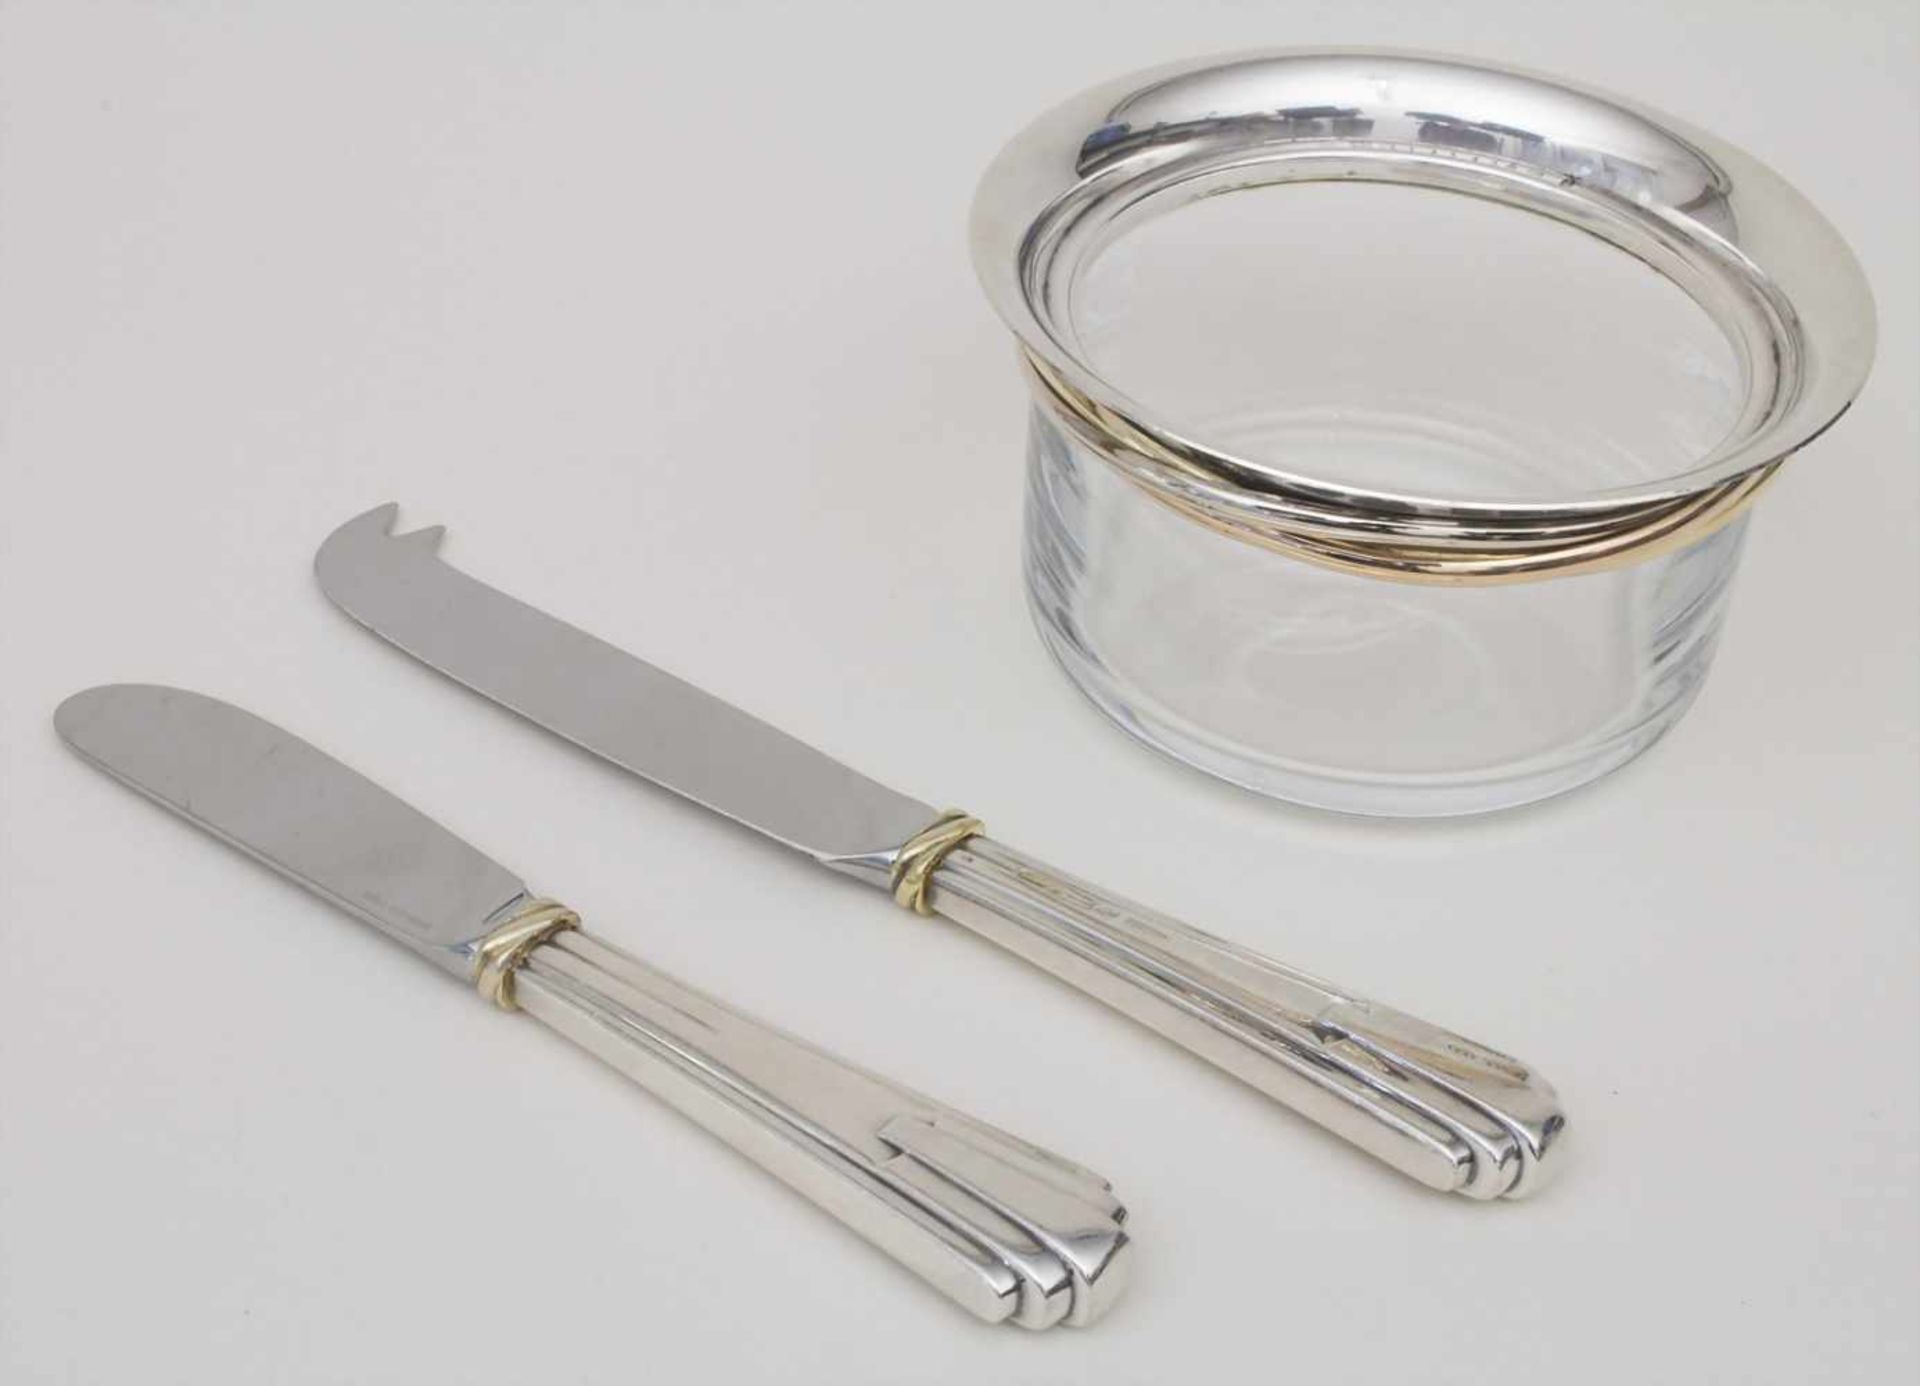 Schale mit Käse & Buttermesser / A silver bowl with butter & cheese knife, Cartier, 20. Jh.Material: